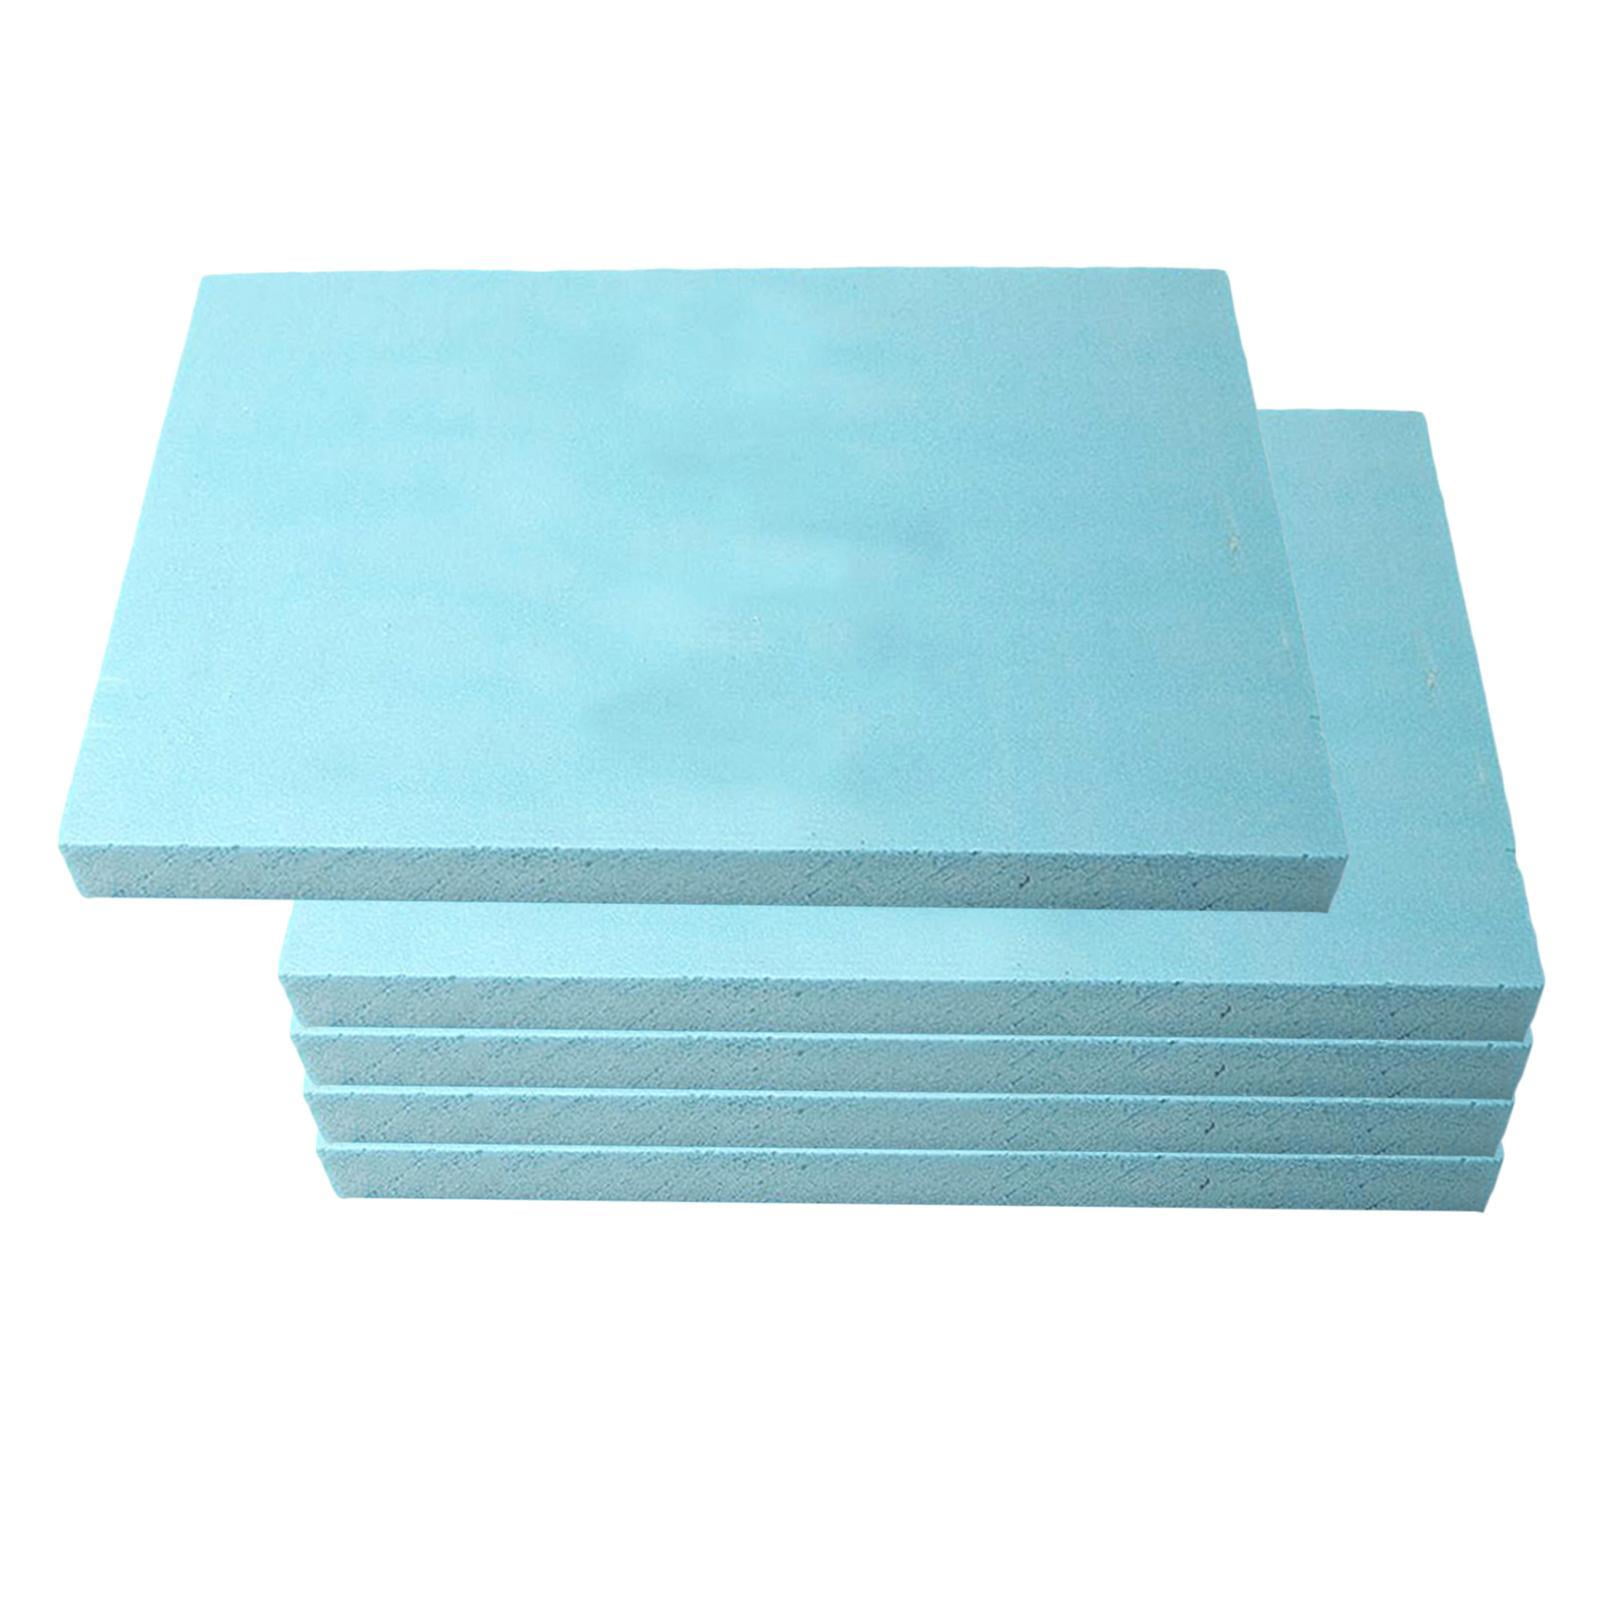 Landscaping Block Plate High Density Foam Board Model Base Plate 29.5x20x3cm 